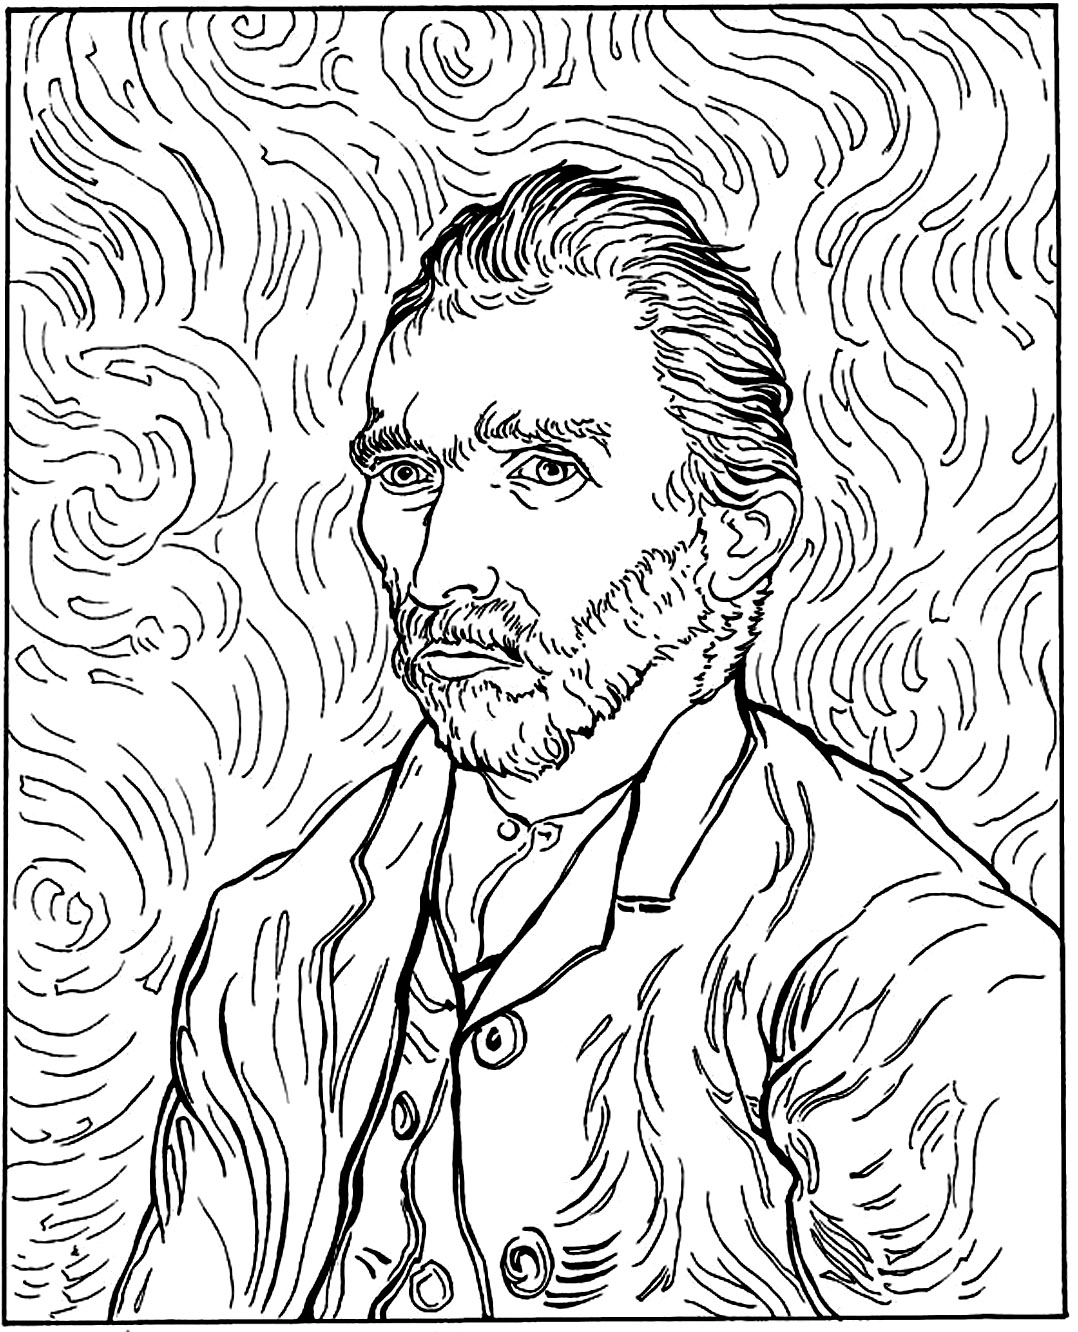 Il famoso autoritratto del pittore olandese Vincent Van Gogh